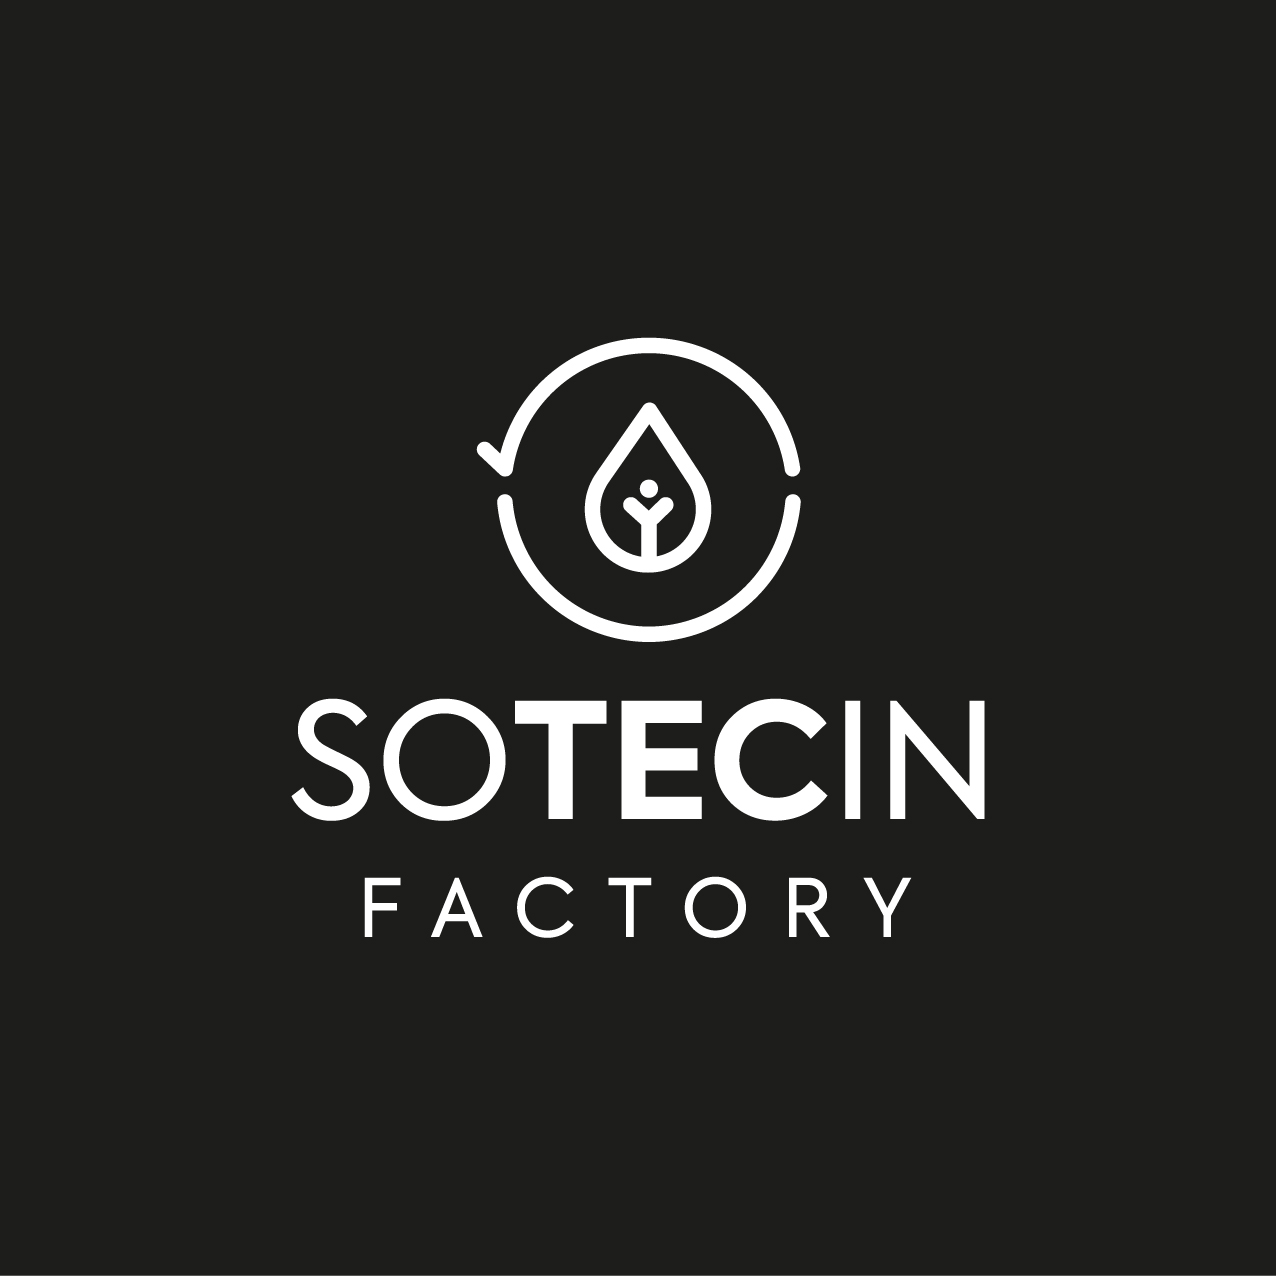 SOTECIN FACTORY Logo